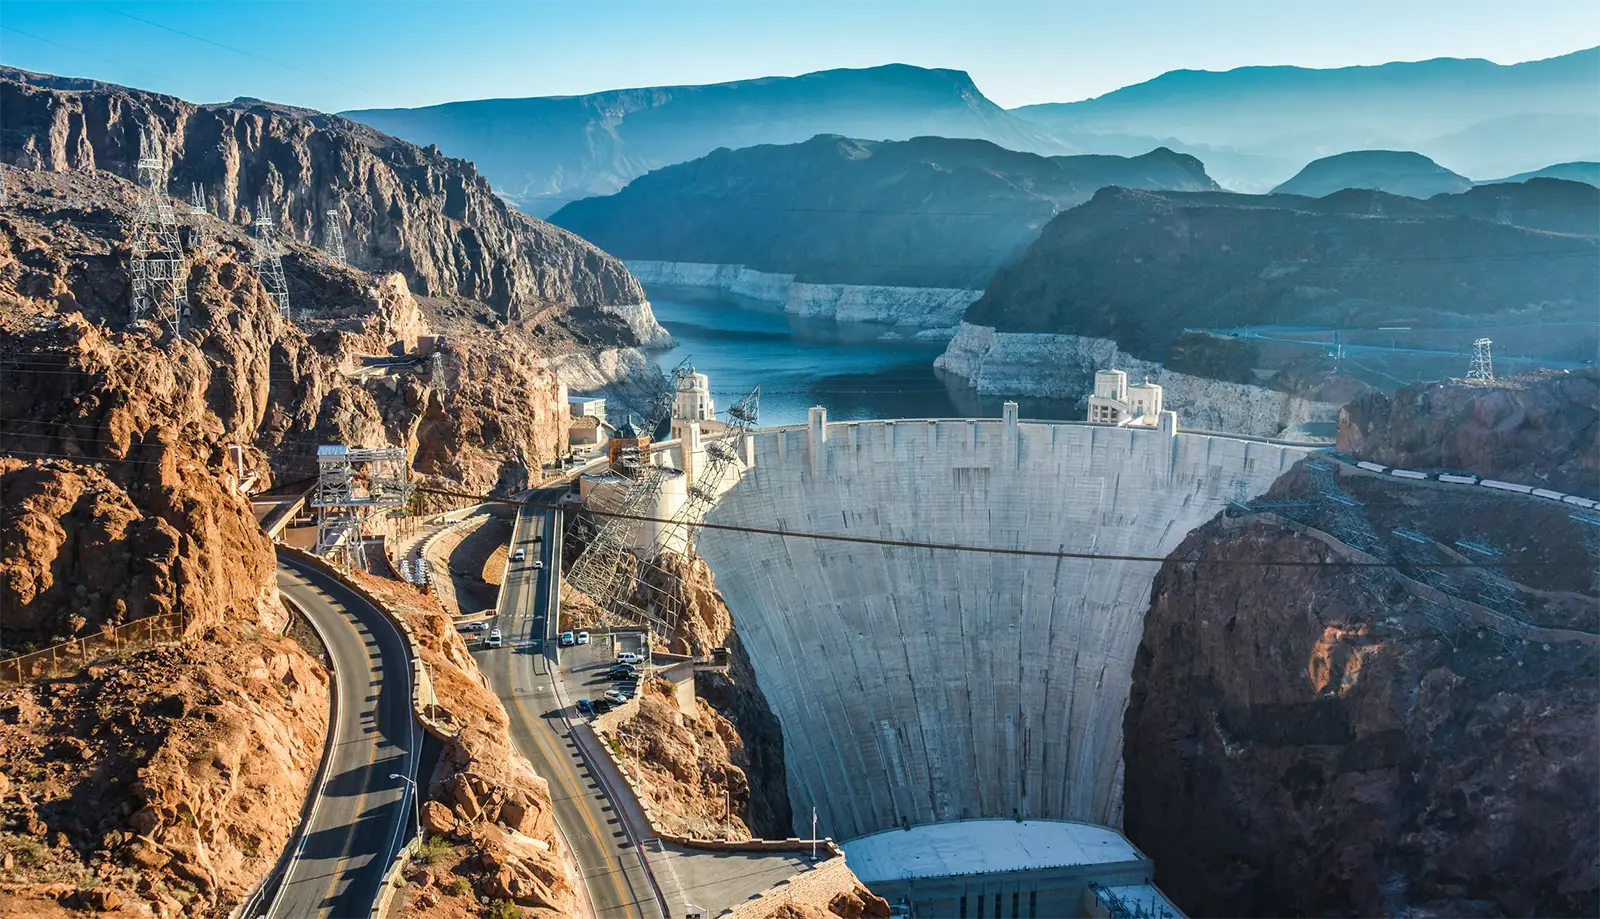 Khám phá những điều thú vị về đập thủy điện Hoover